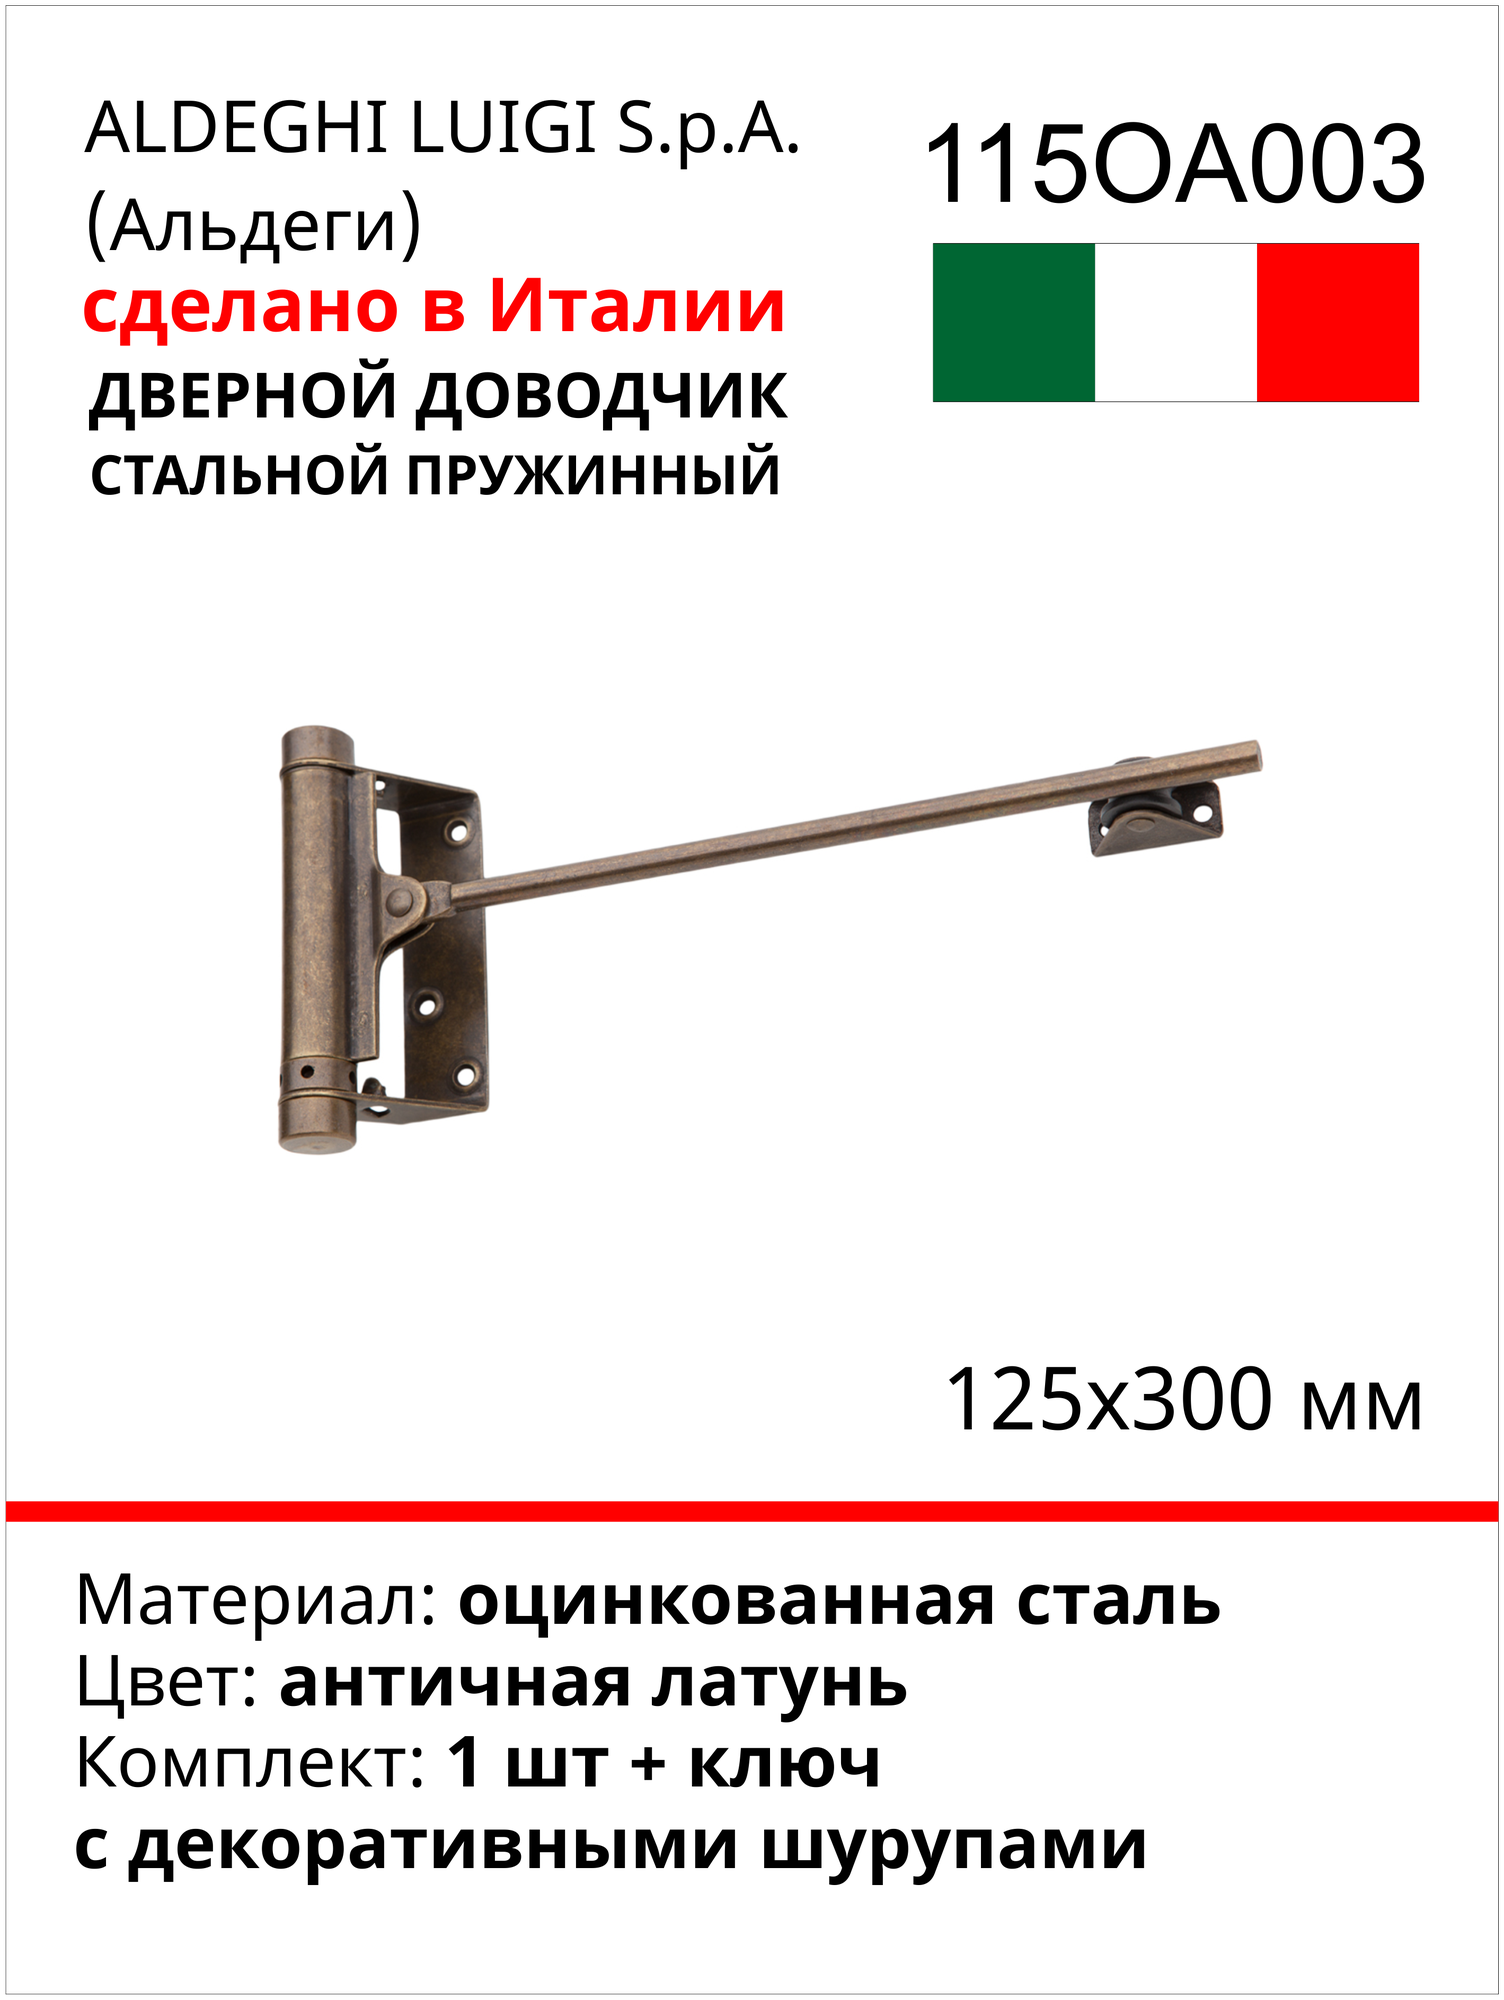 Дверной доводчик ALDEGHI LUIGI SPA стальной, пружинный, 125х300 мм, цвет: античная латунь, к-т: 1 шт + ключ с декоративными шурупами 115OA003